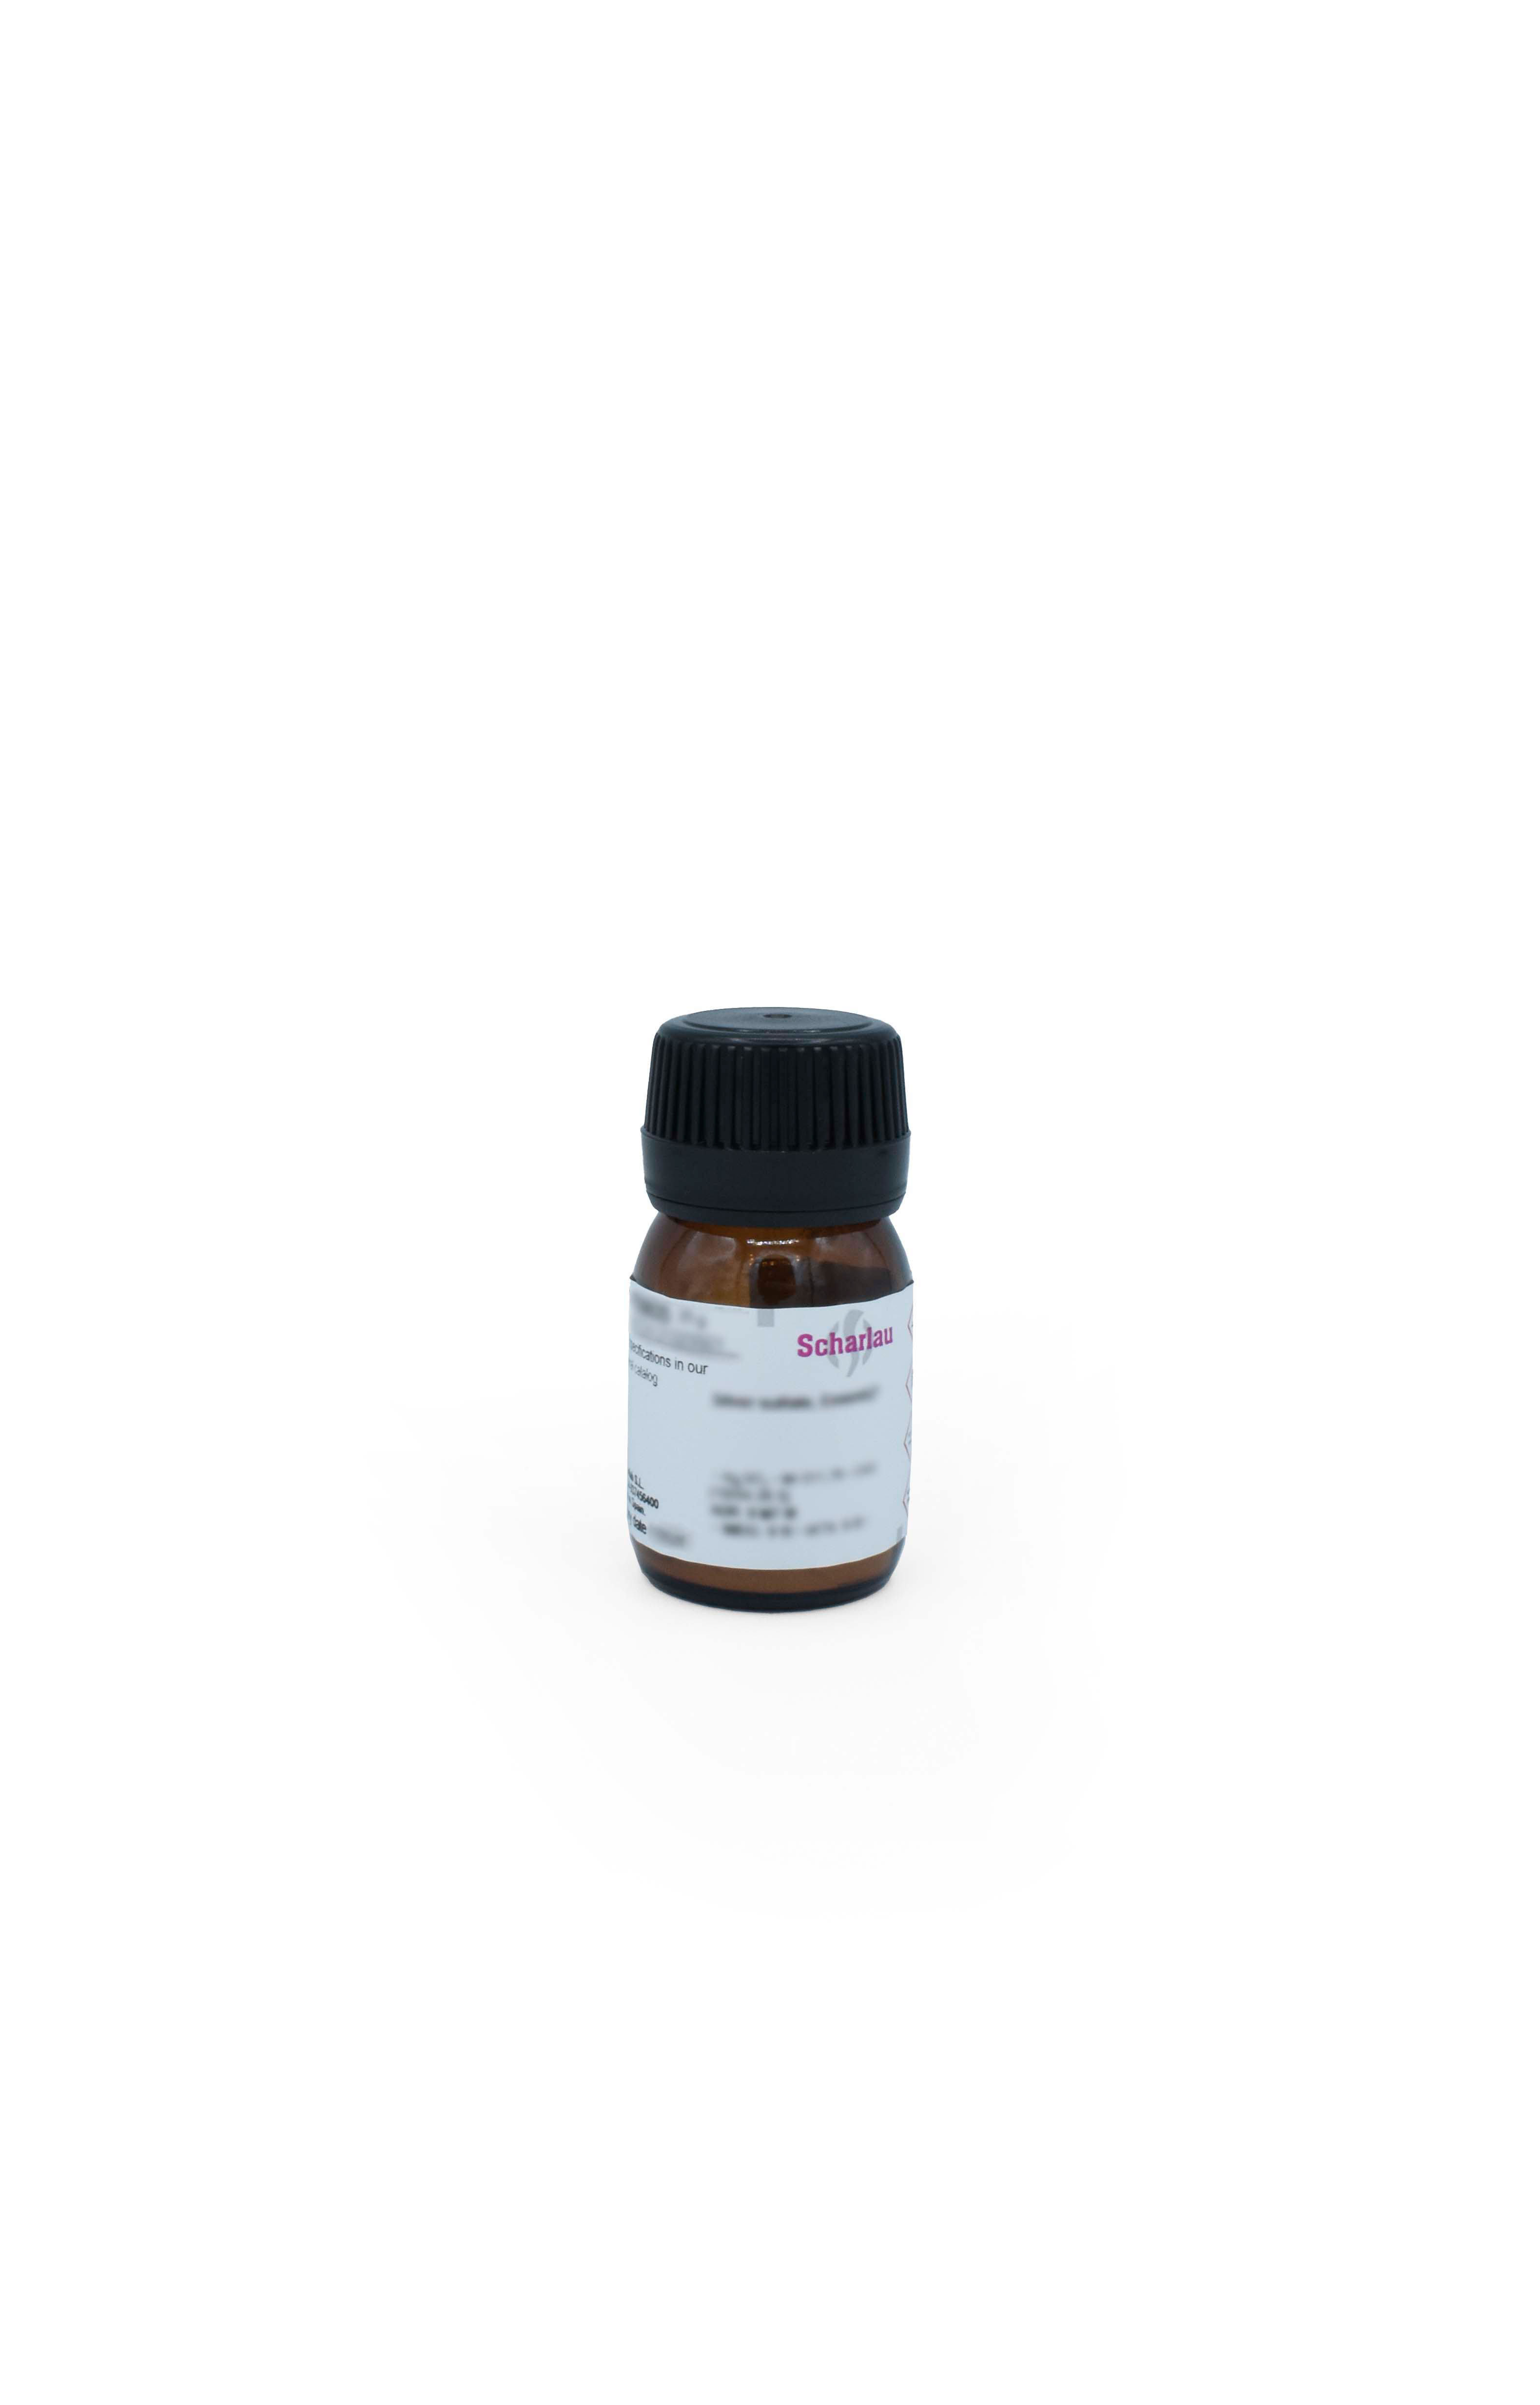 Orcina monohidrato, purísima, Reag. Ph Eur, 5-Metilresorcinol, 3,5-Dihidroxitolueno monohidrato